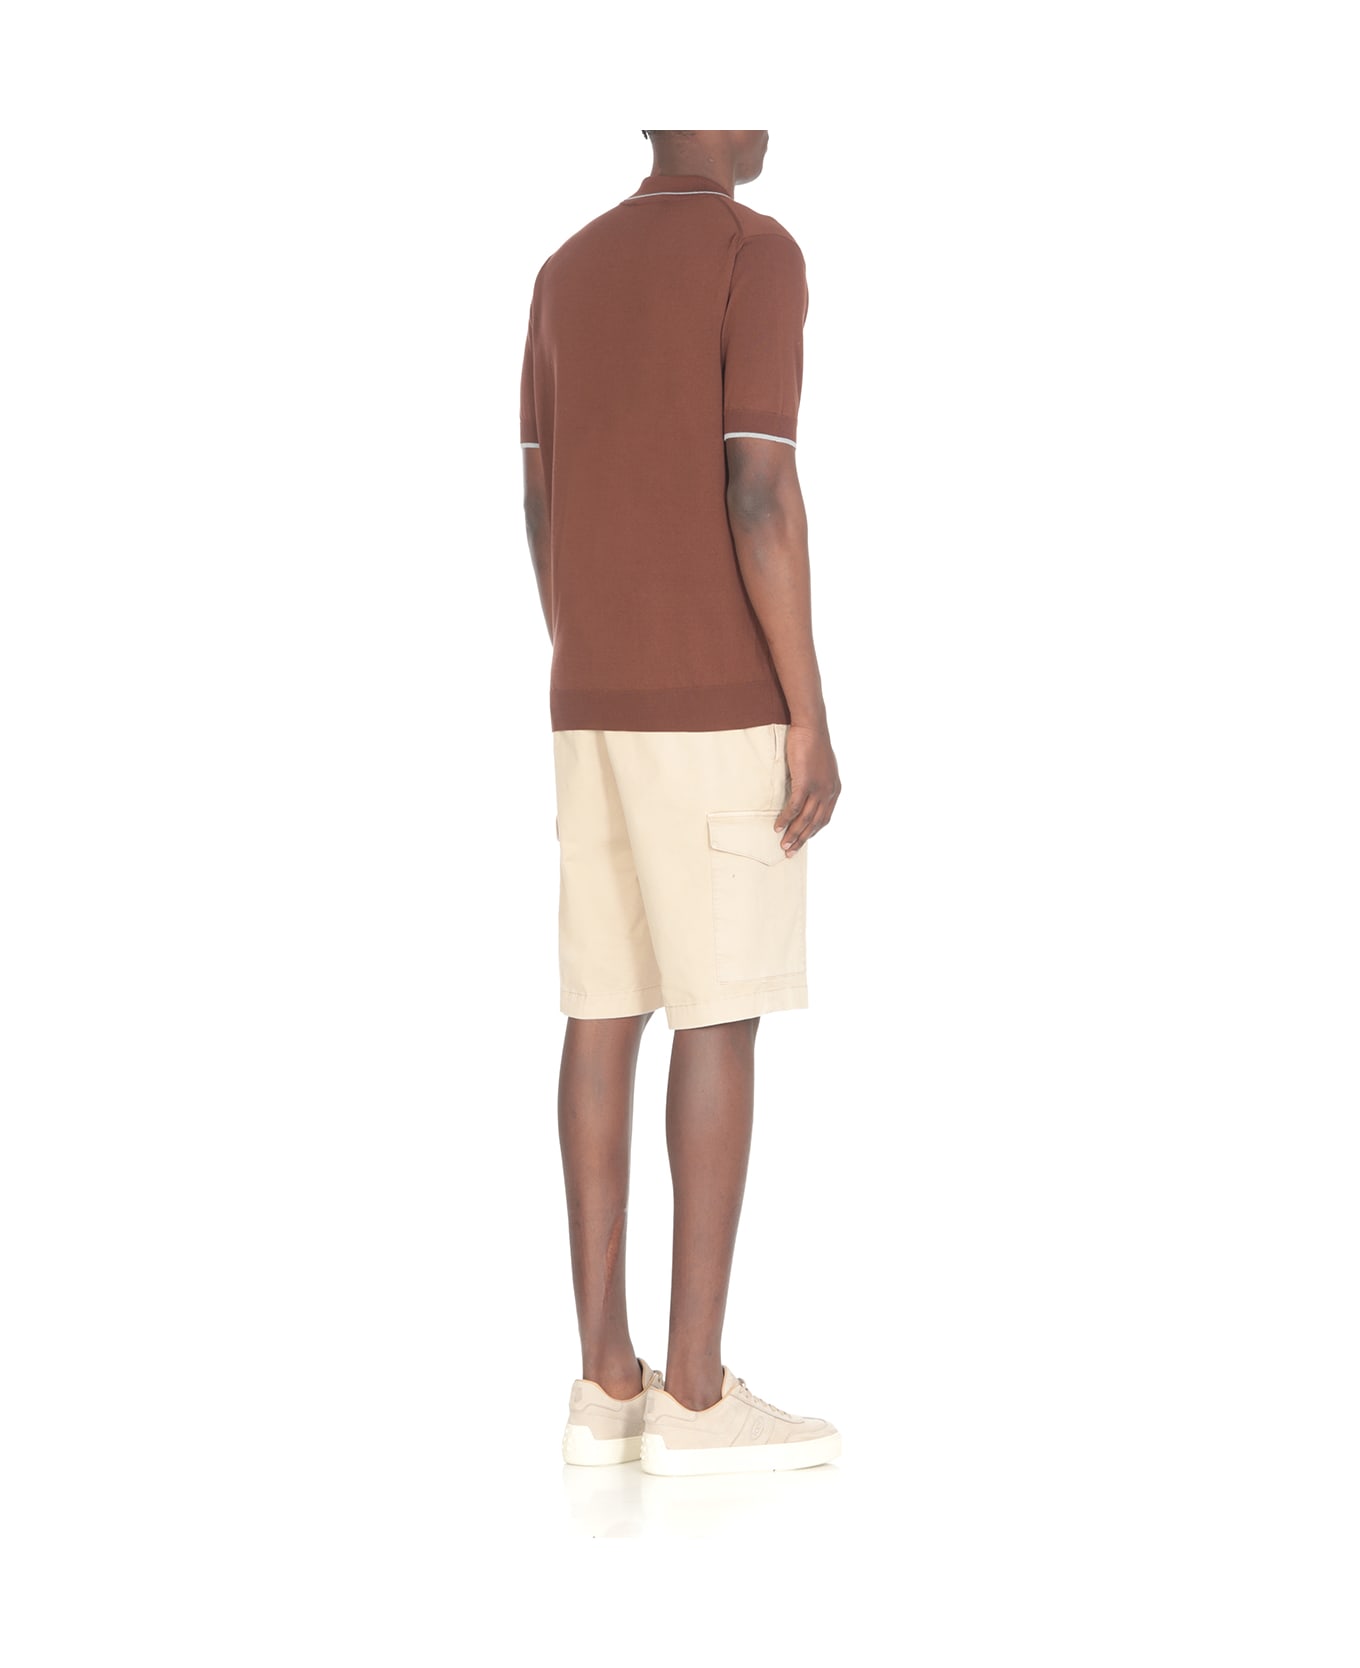 Peserico Cotton Polo Shirt - Brown